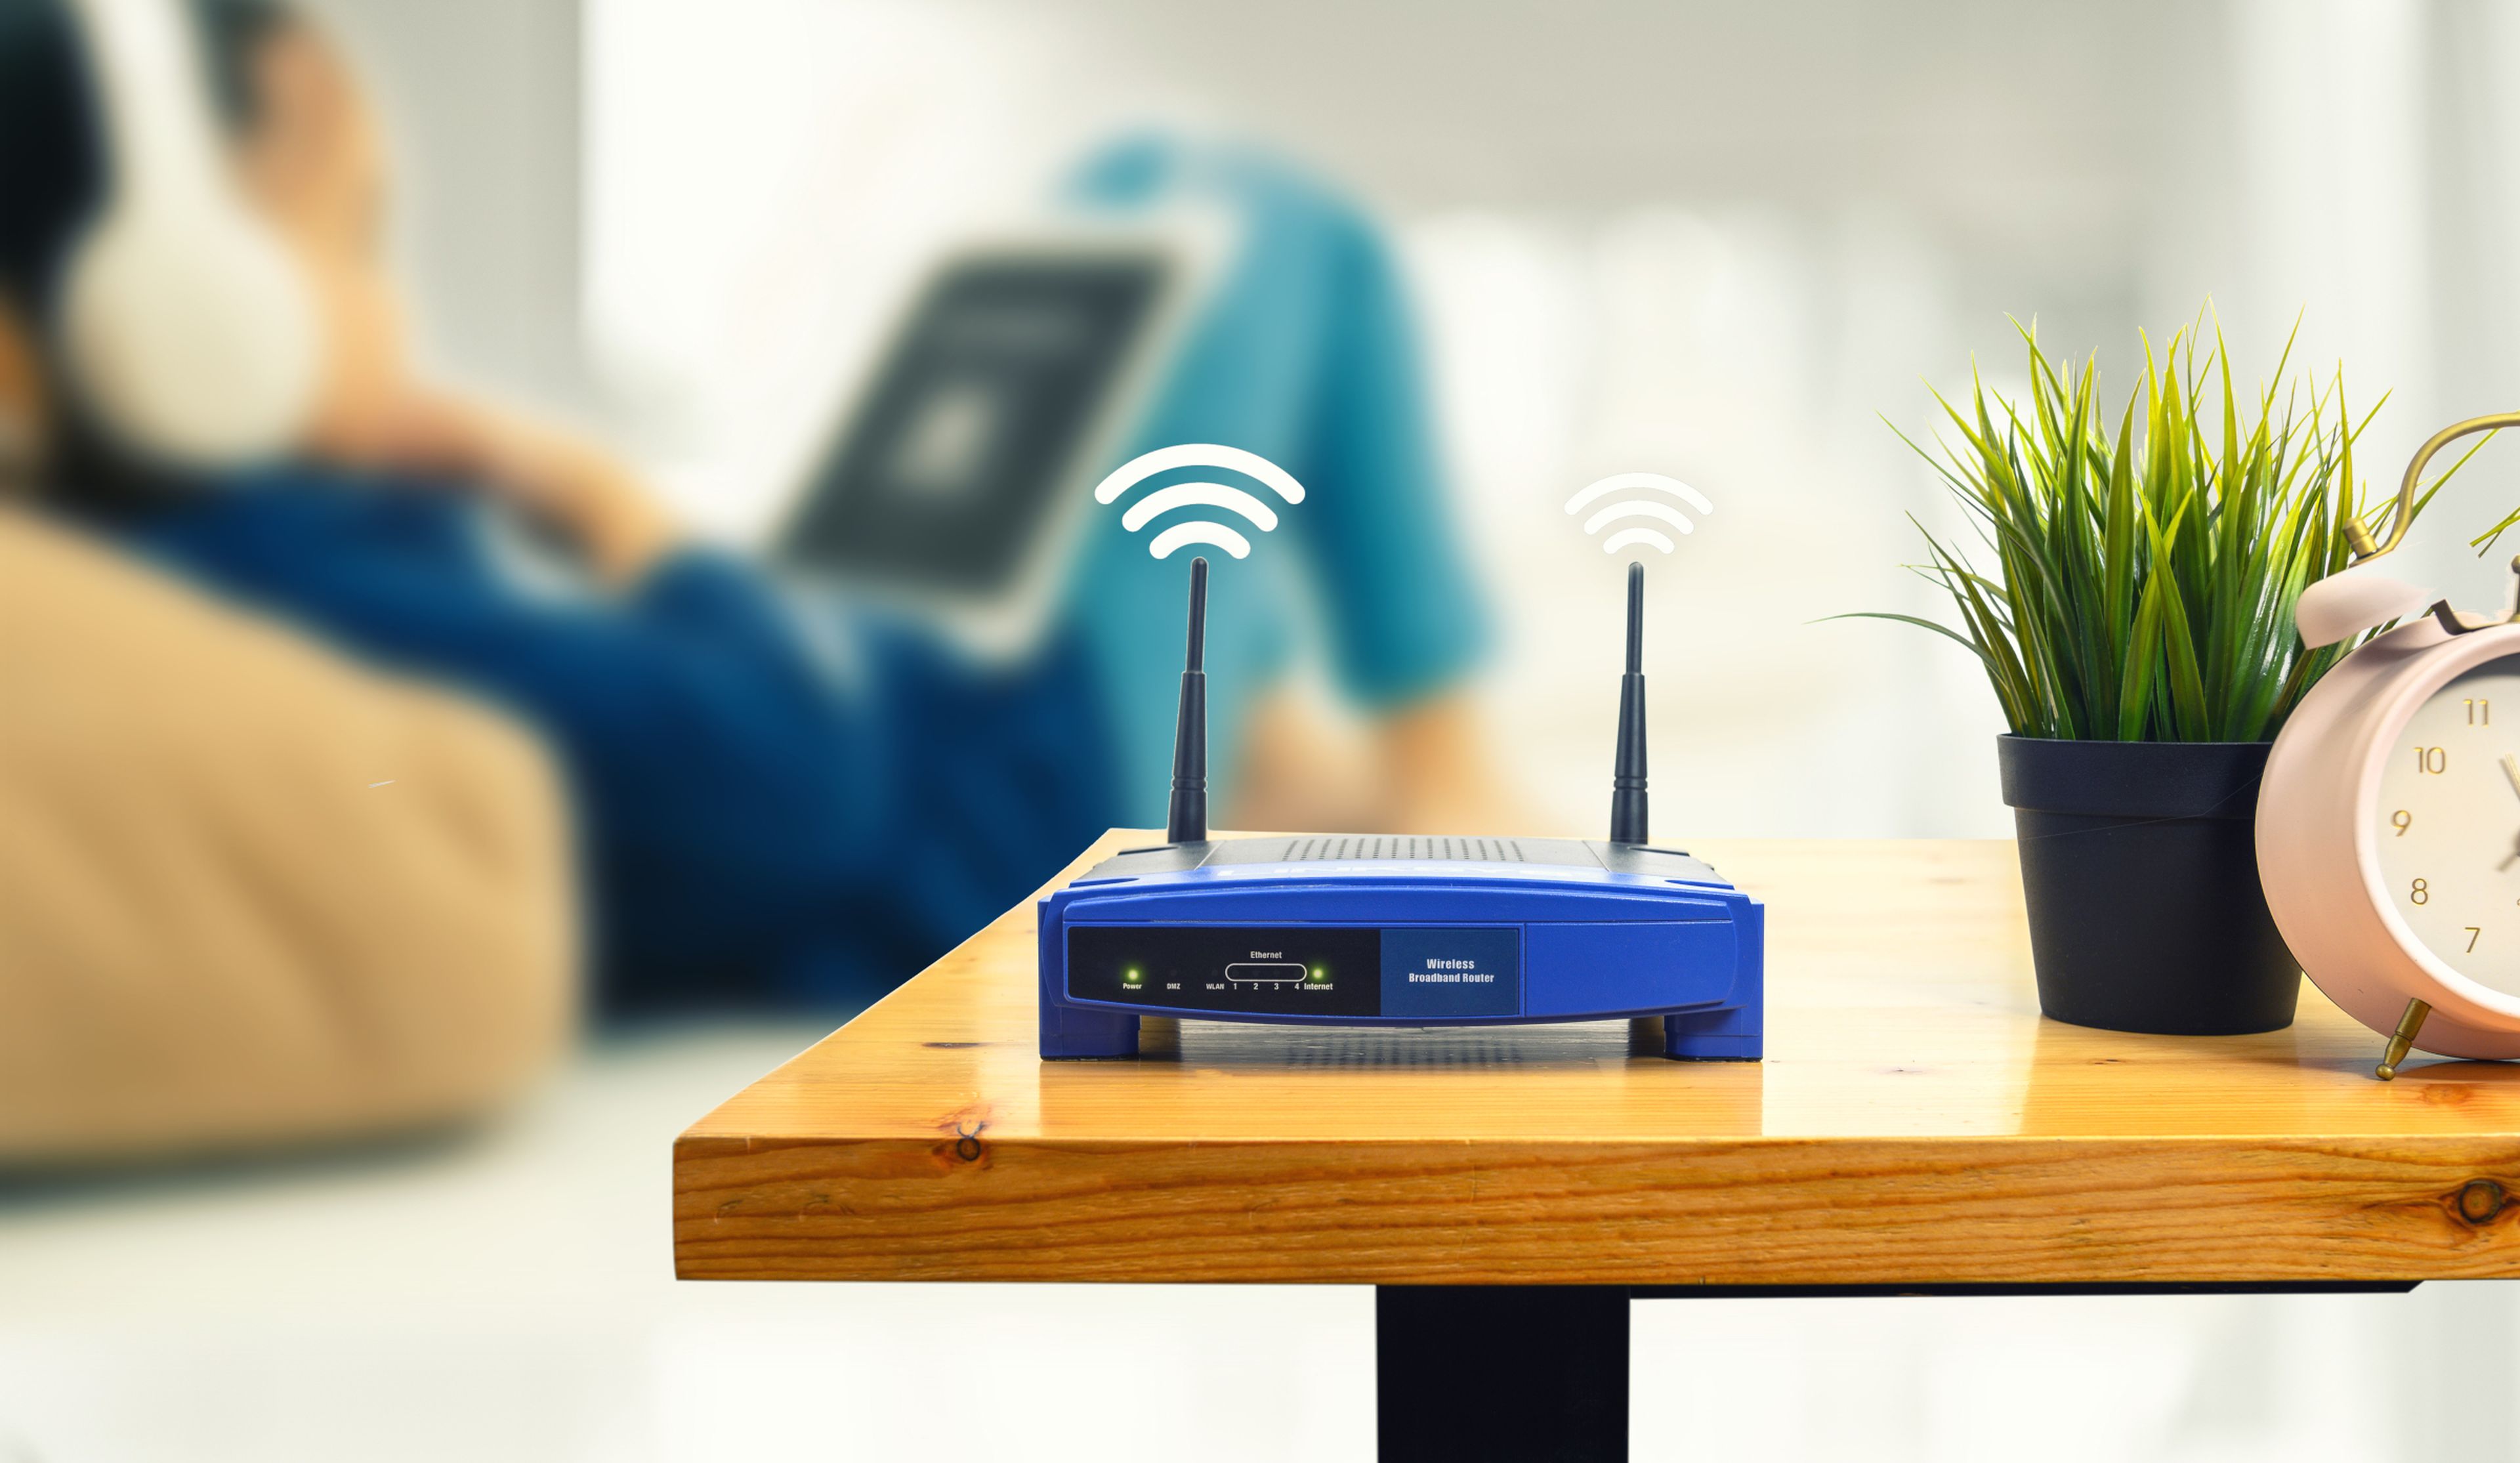 Extensamente Incompetencia Presunto Estos routers son baratos y solucionarán los problemas con el WiFi en casa  | Computer Hoy